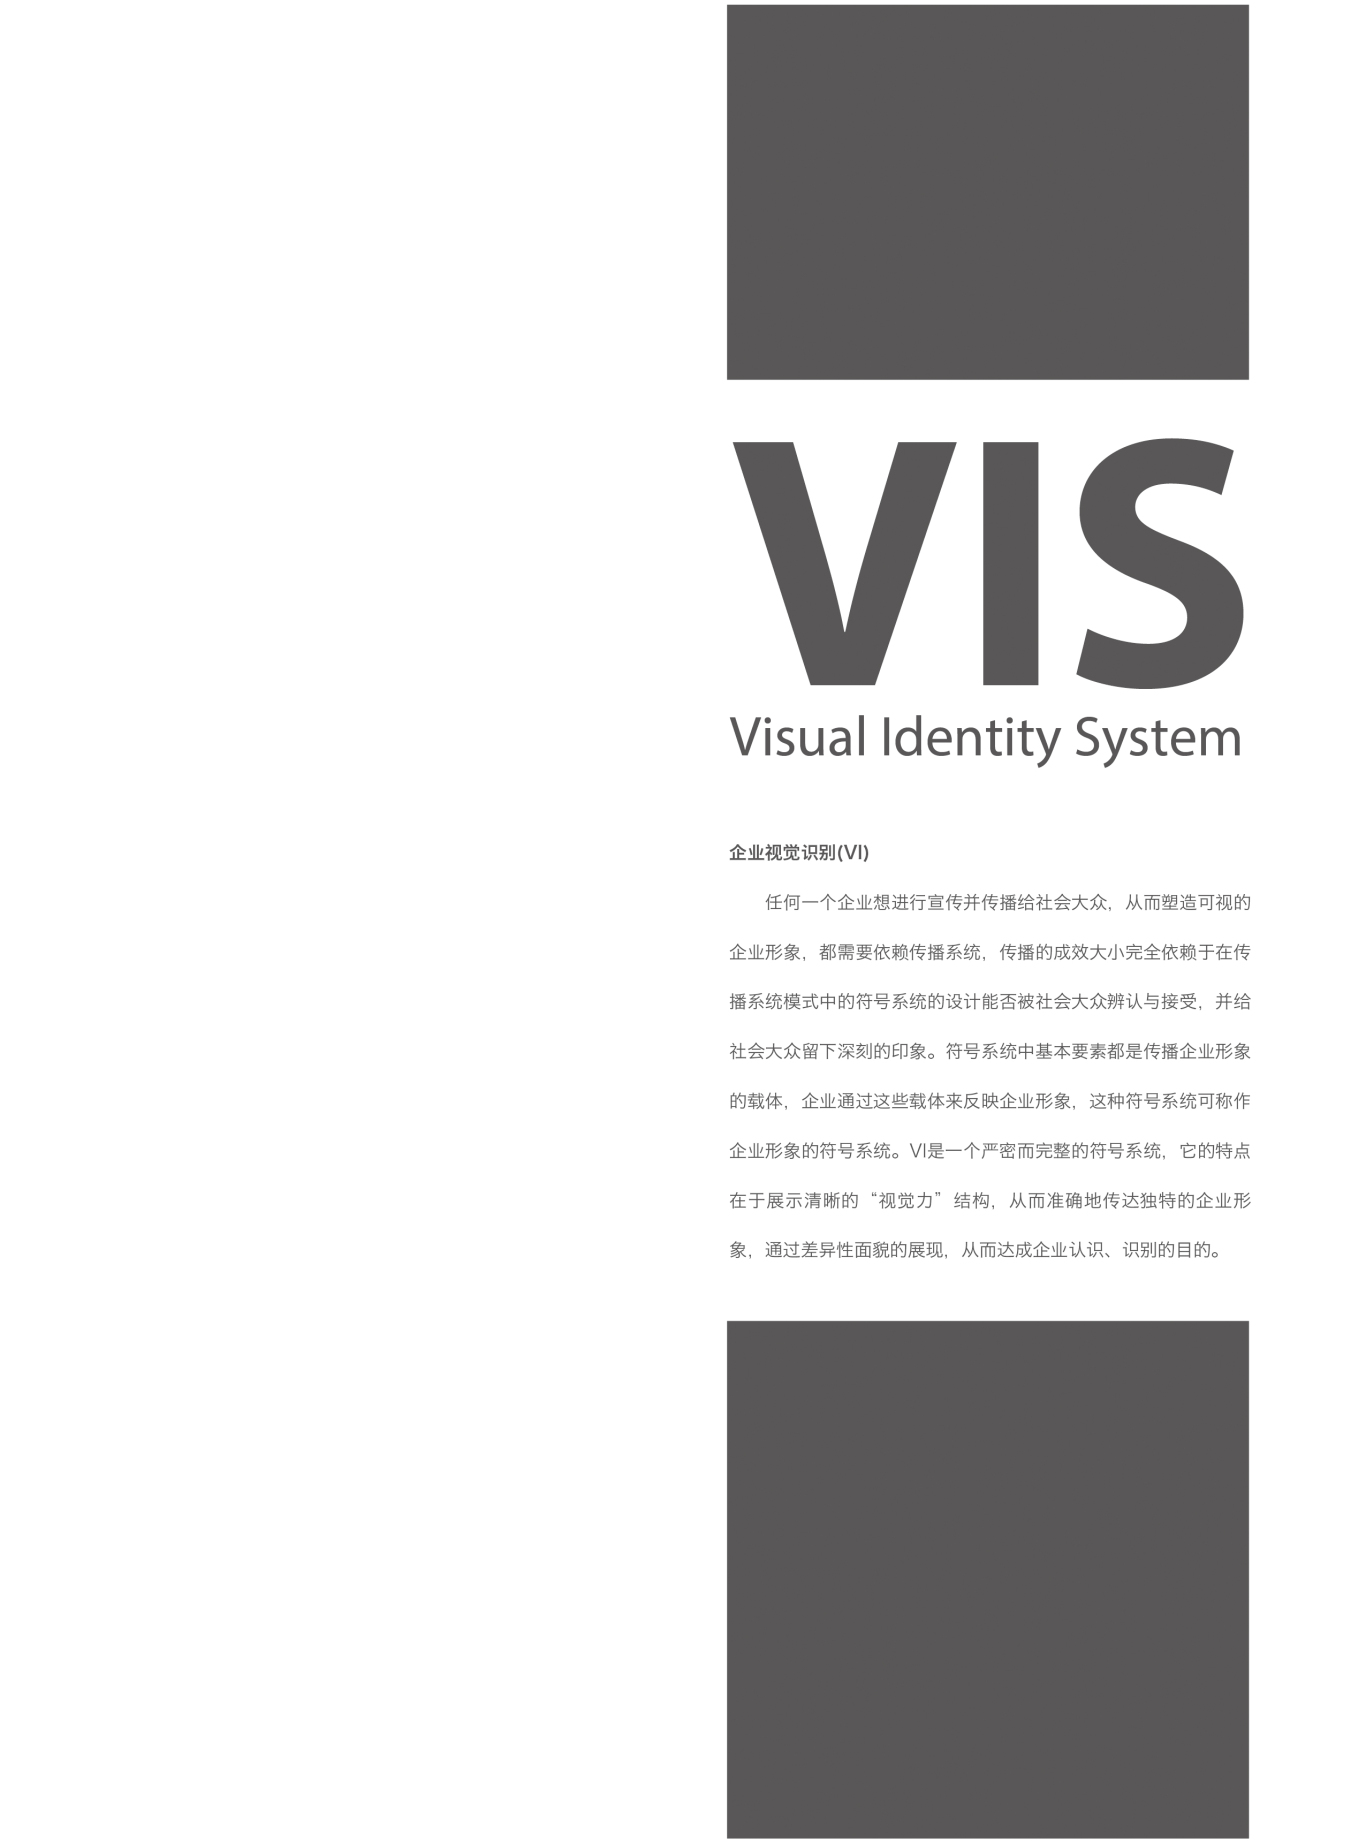 邯郸第二建筑有限公司logo 及 VIS图1